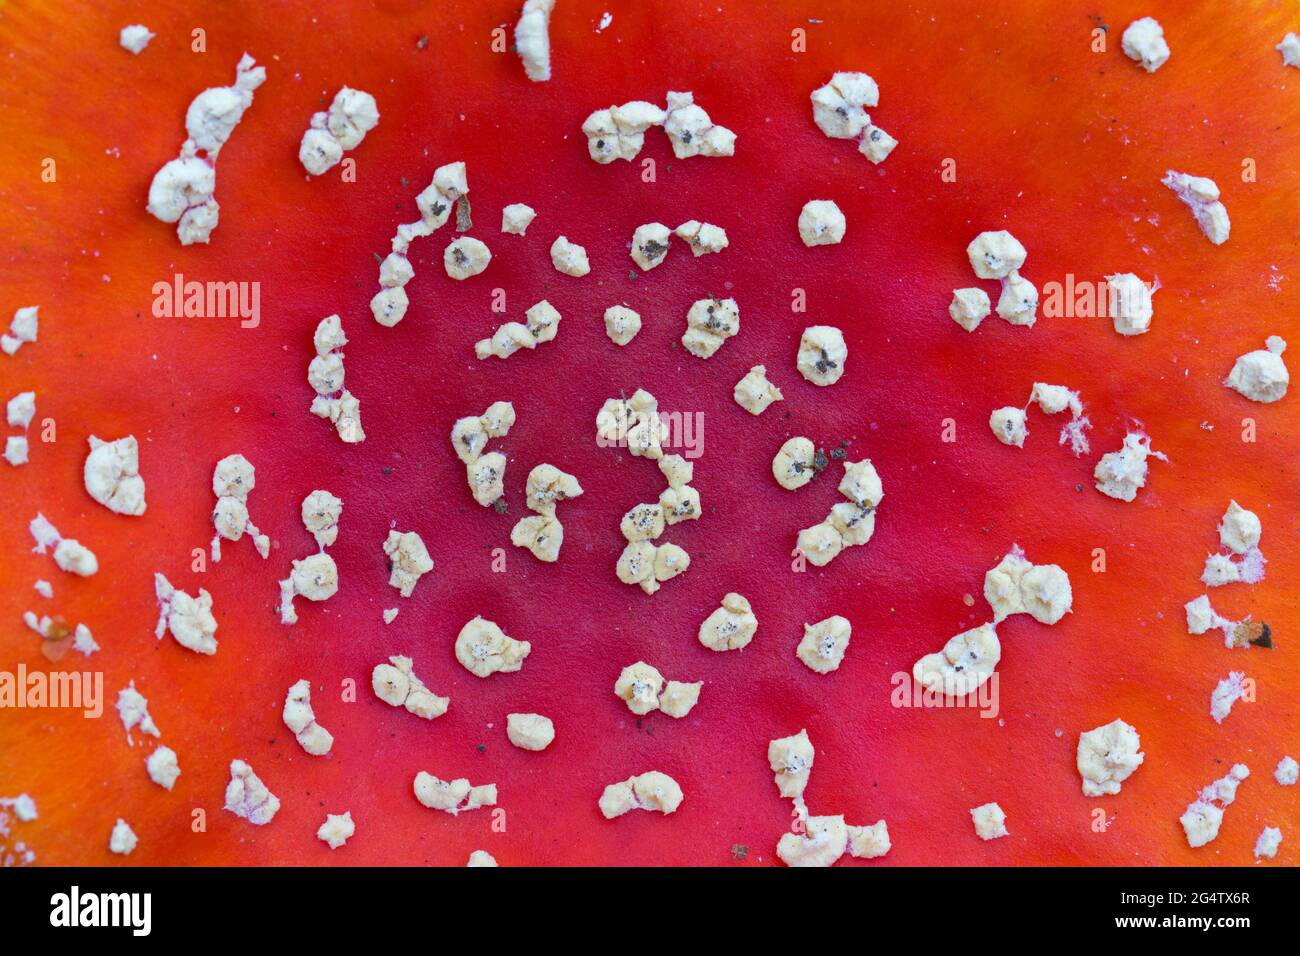 Primer plano de la gorra roja de la mosca agárica / setas amanita (Amanita muscaria) mostrando manchas blancas, verrugas en forma de pirámide, restos del velo universal Foto de stock